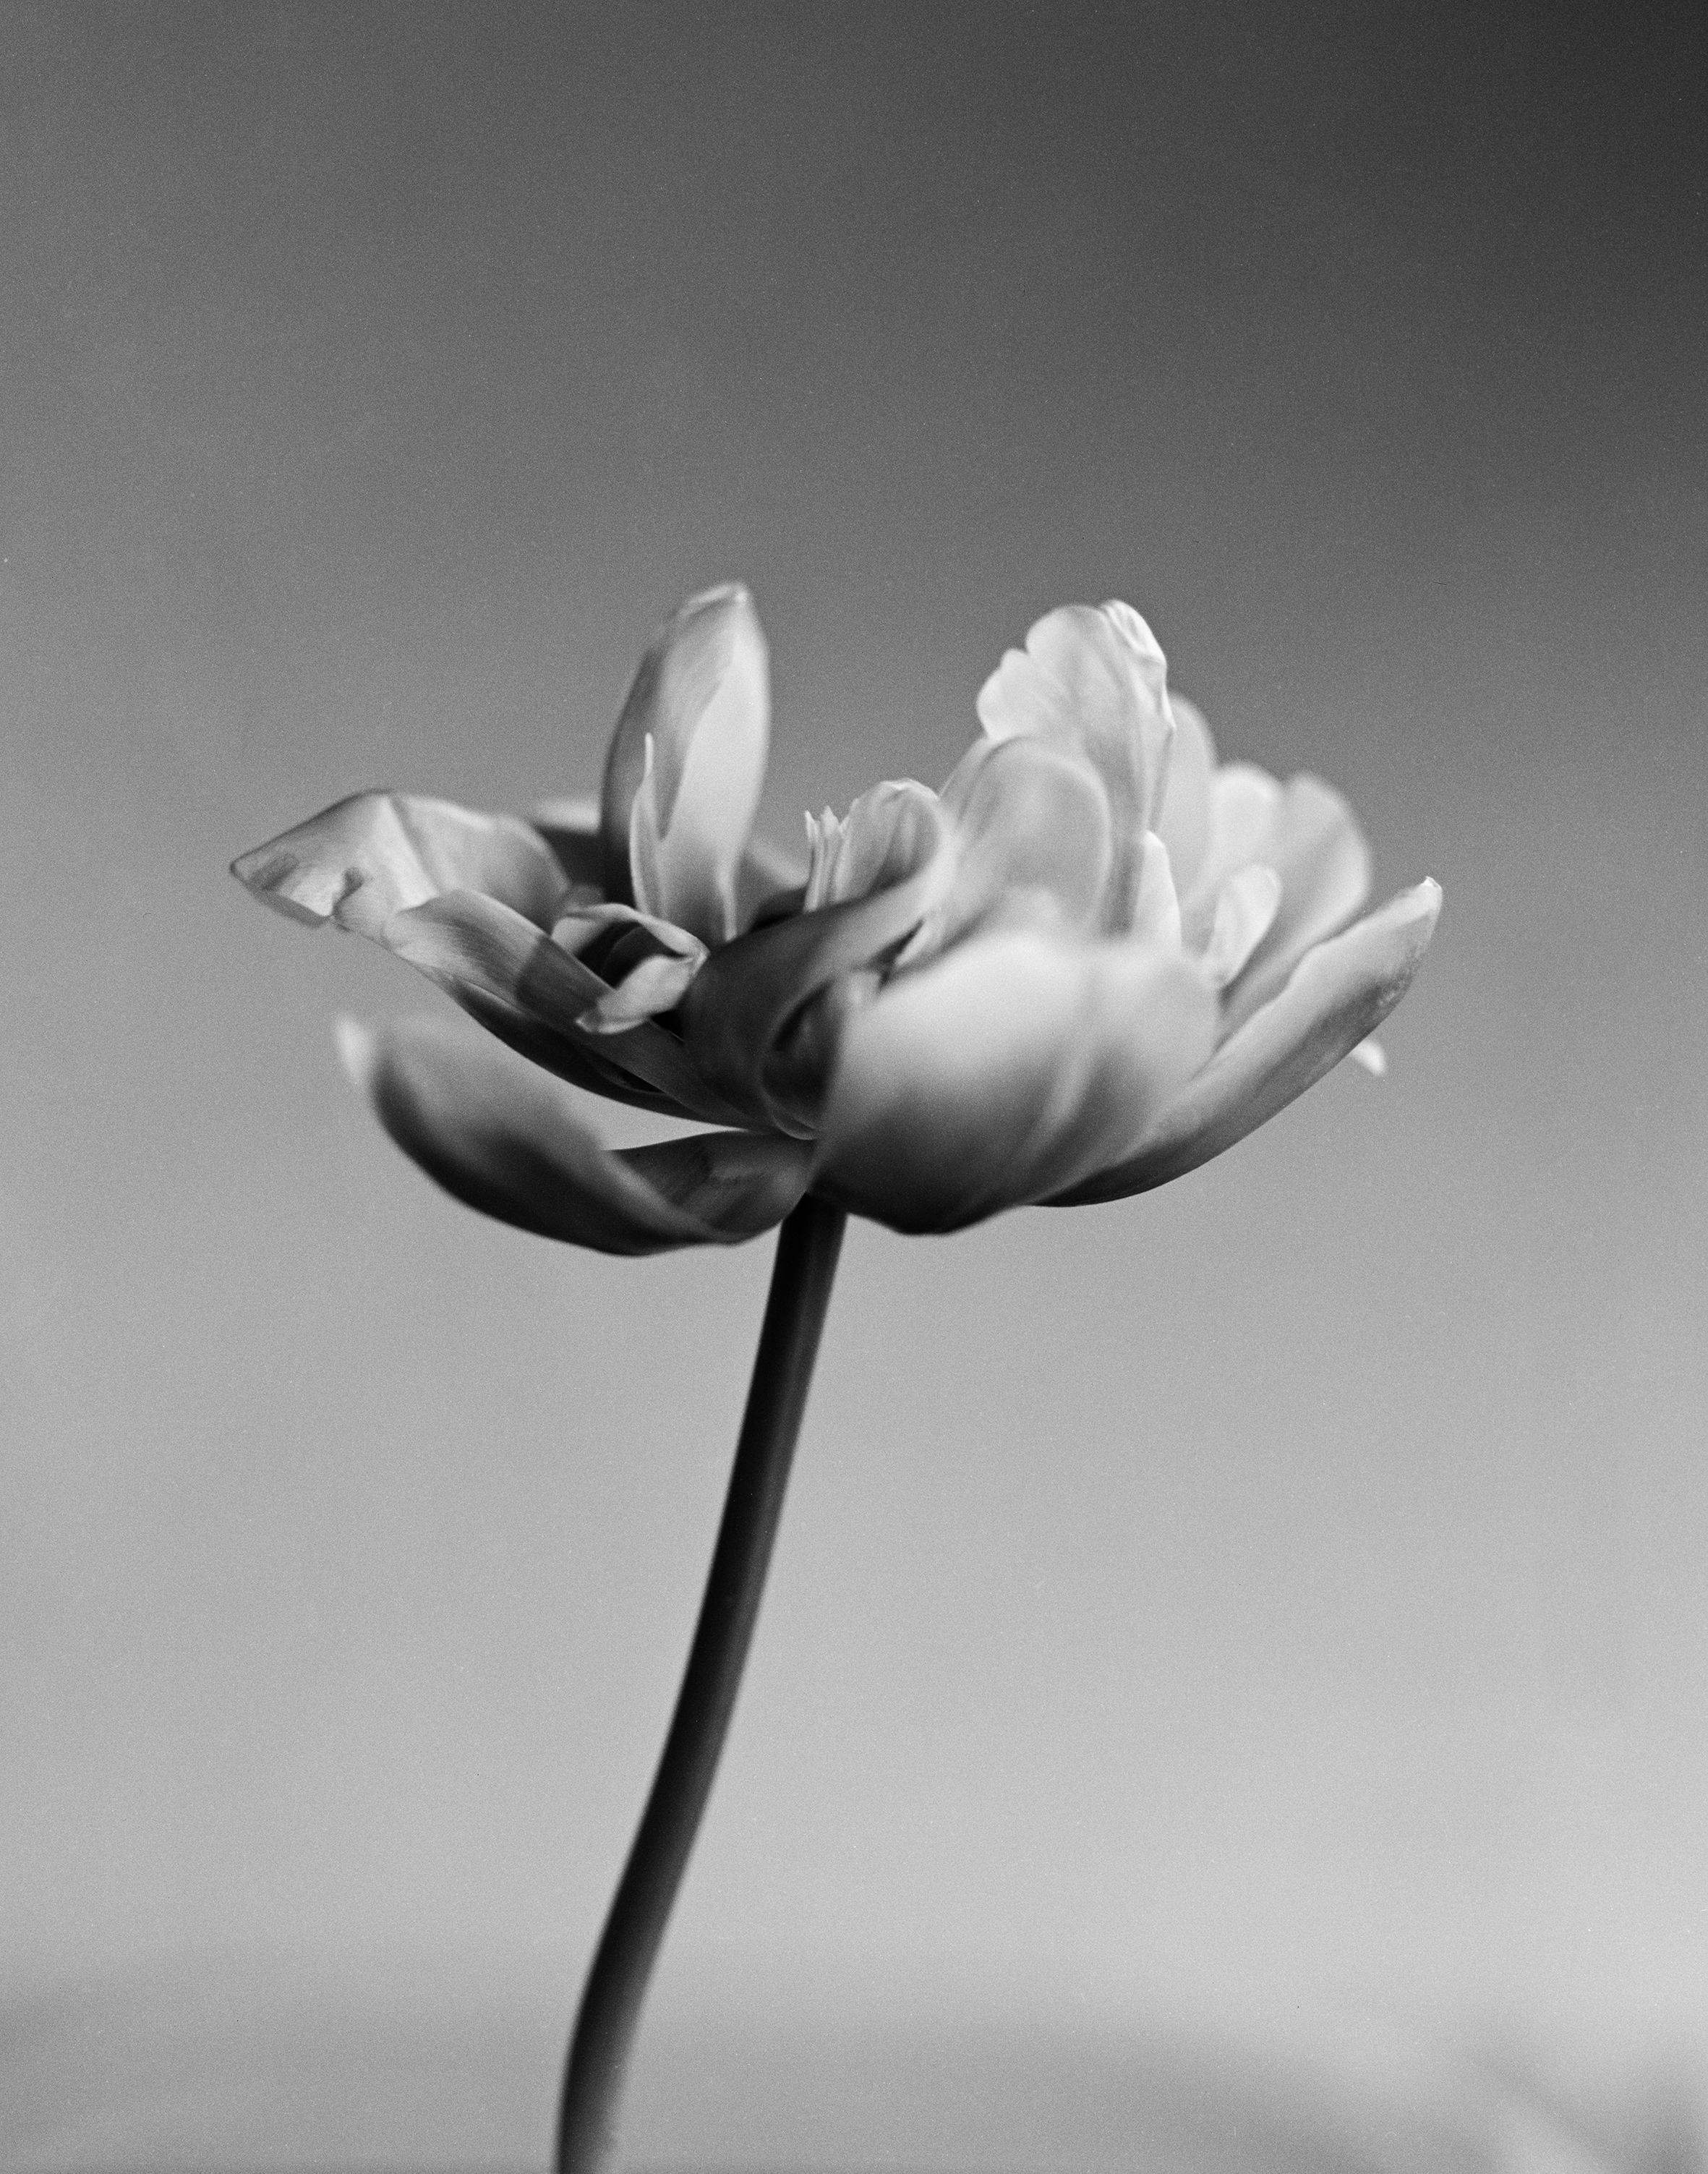 Tulipe - photographie florale analogique en noir et blanc, édition limitée à 10 exemplaires